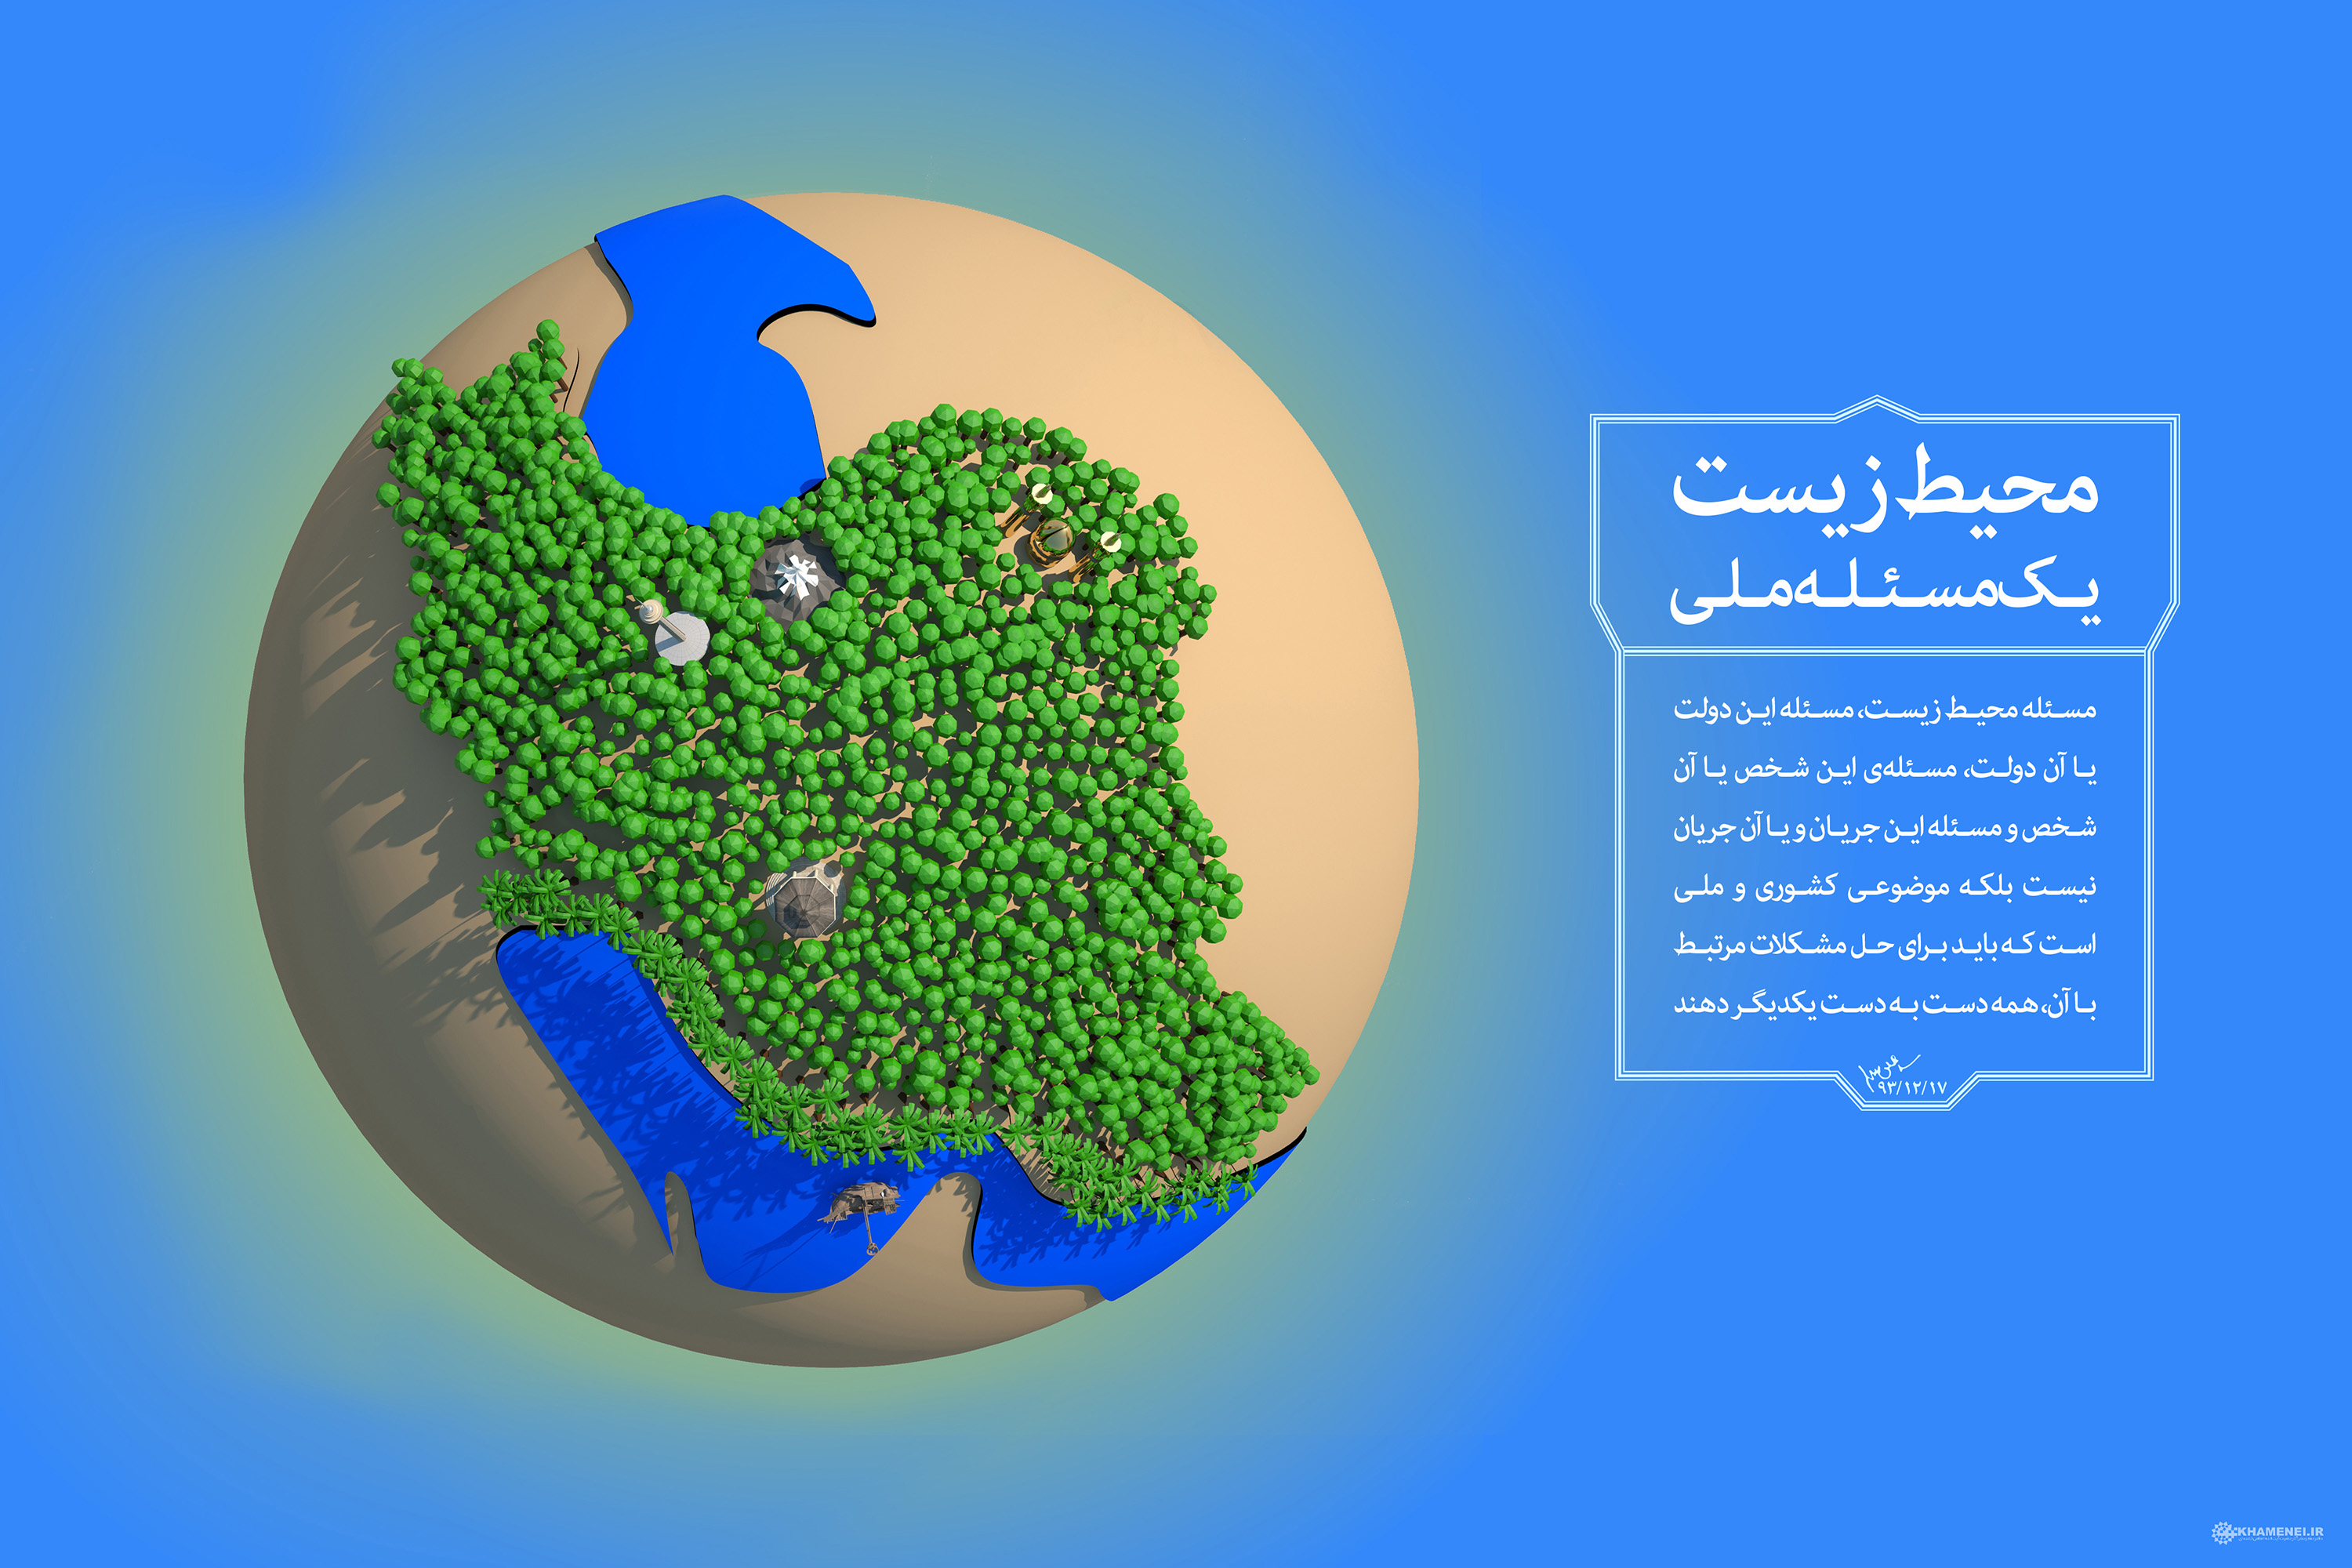 هر ایرانی یک درخت| نماهنگ و پوستر